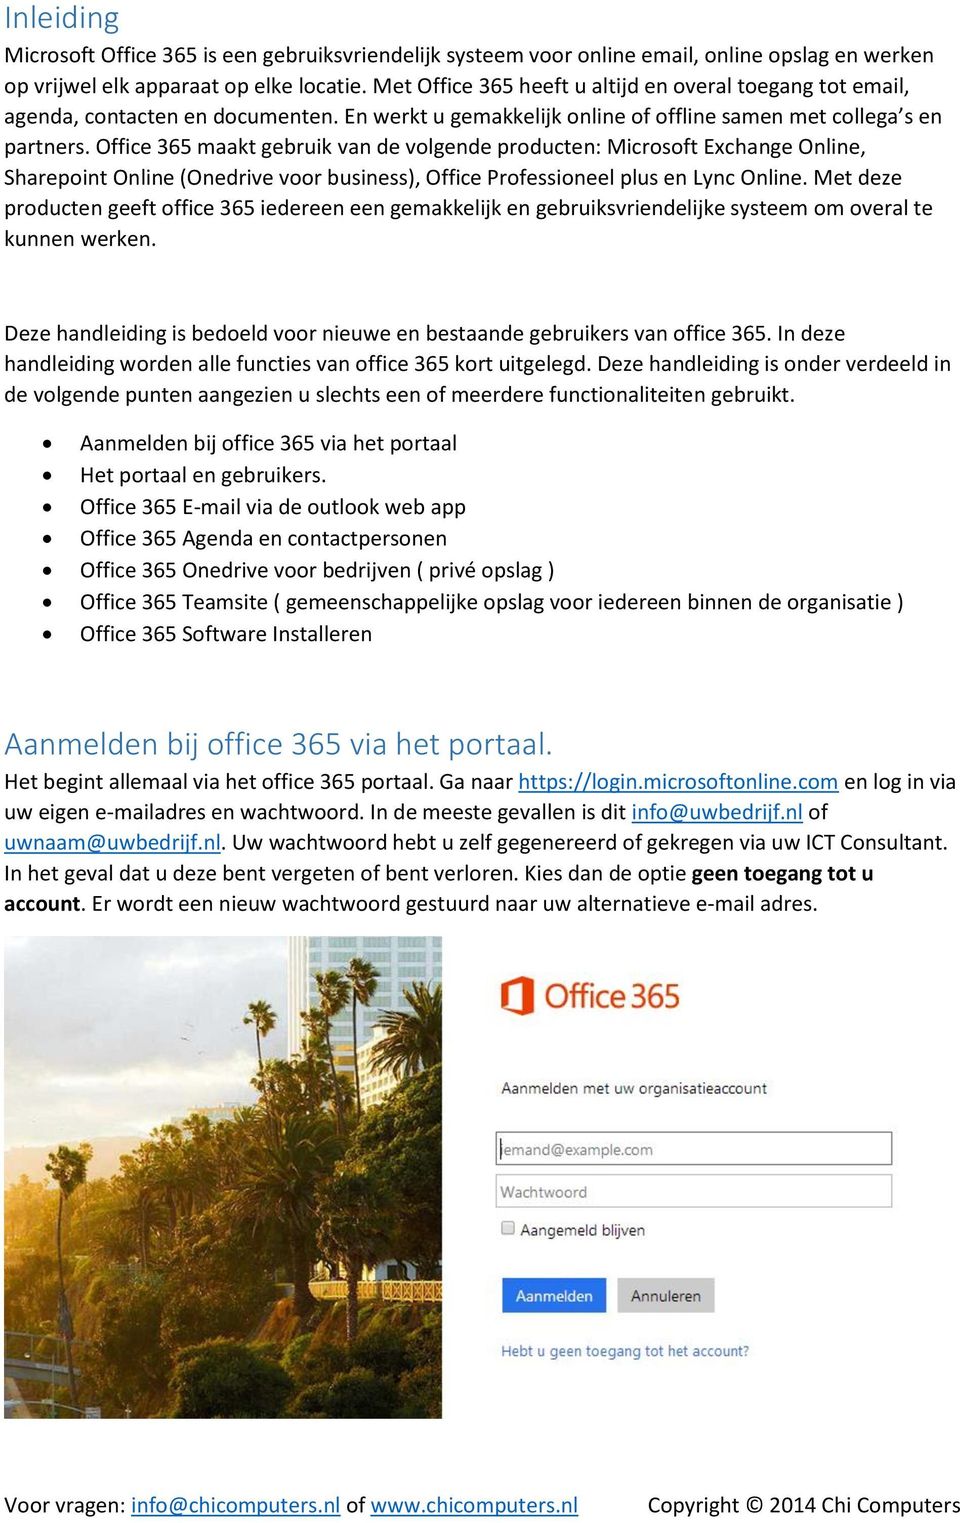 Office 365 maakt gebruik van de volgende producten: Microsoft Exchange Online, Sharepoint Online (Onedrive voor business), Office Professioneel plus en Lync Online.